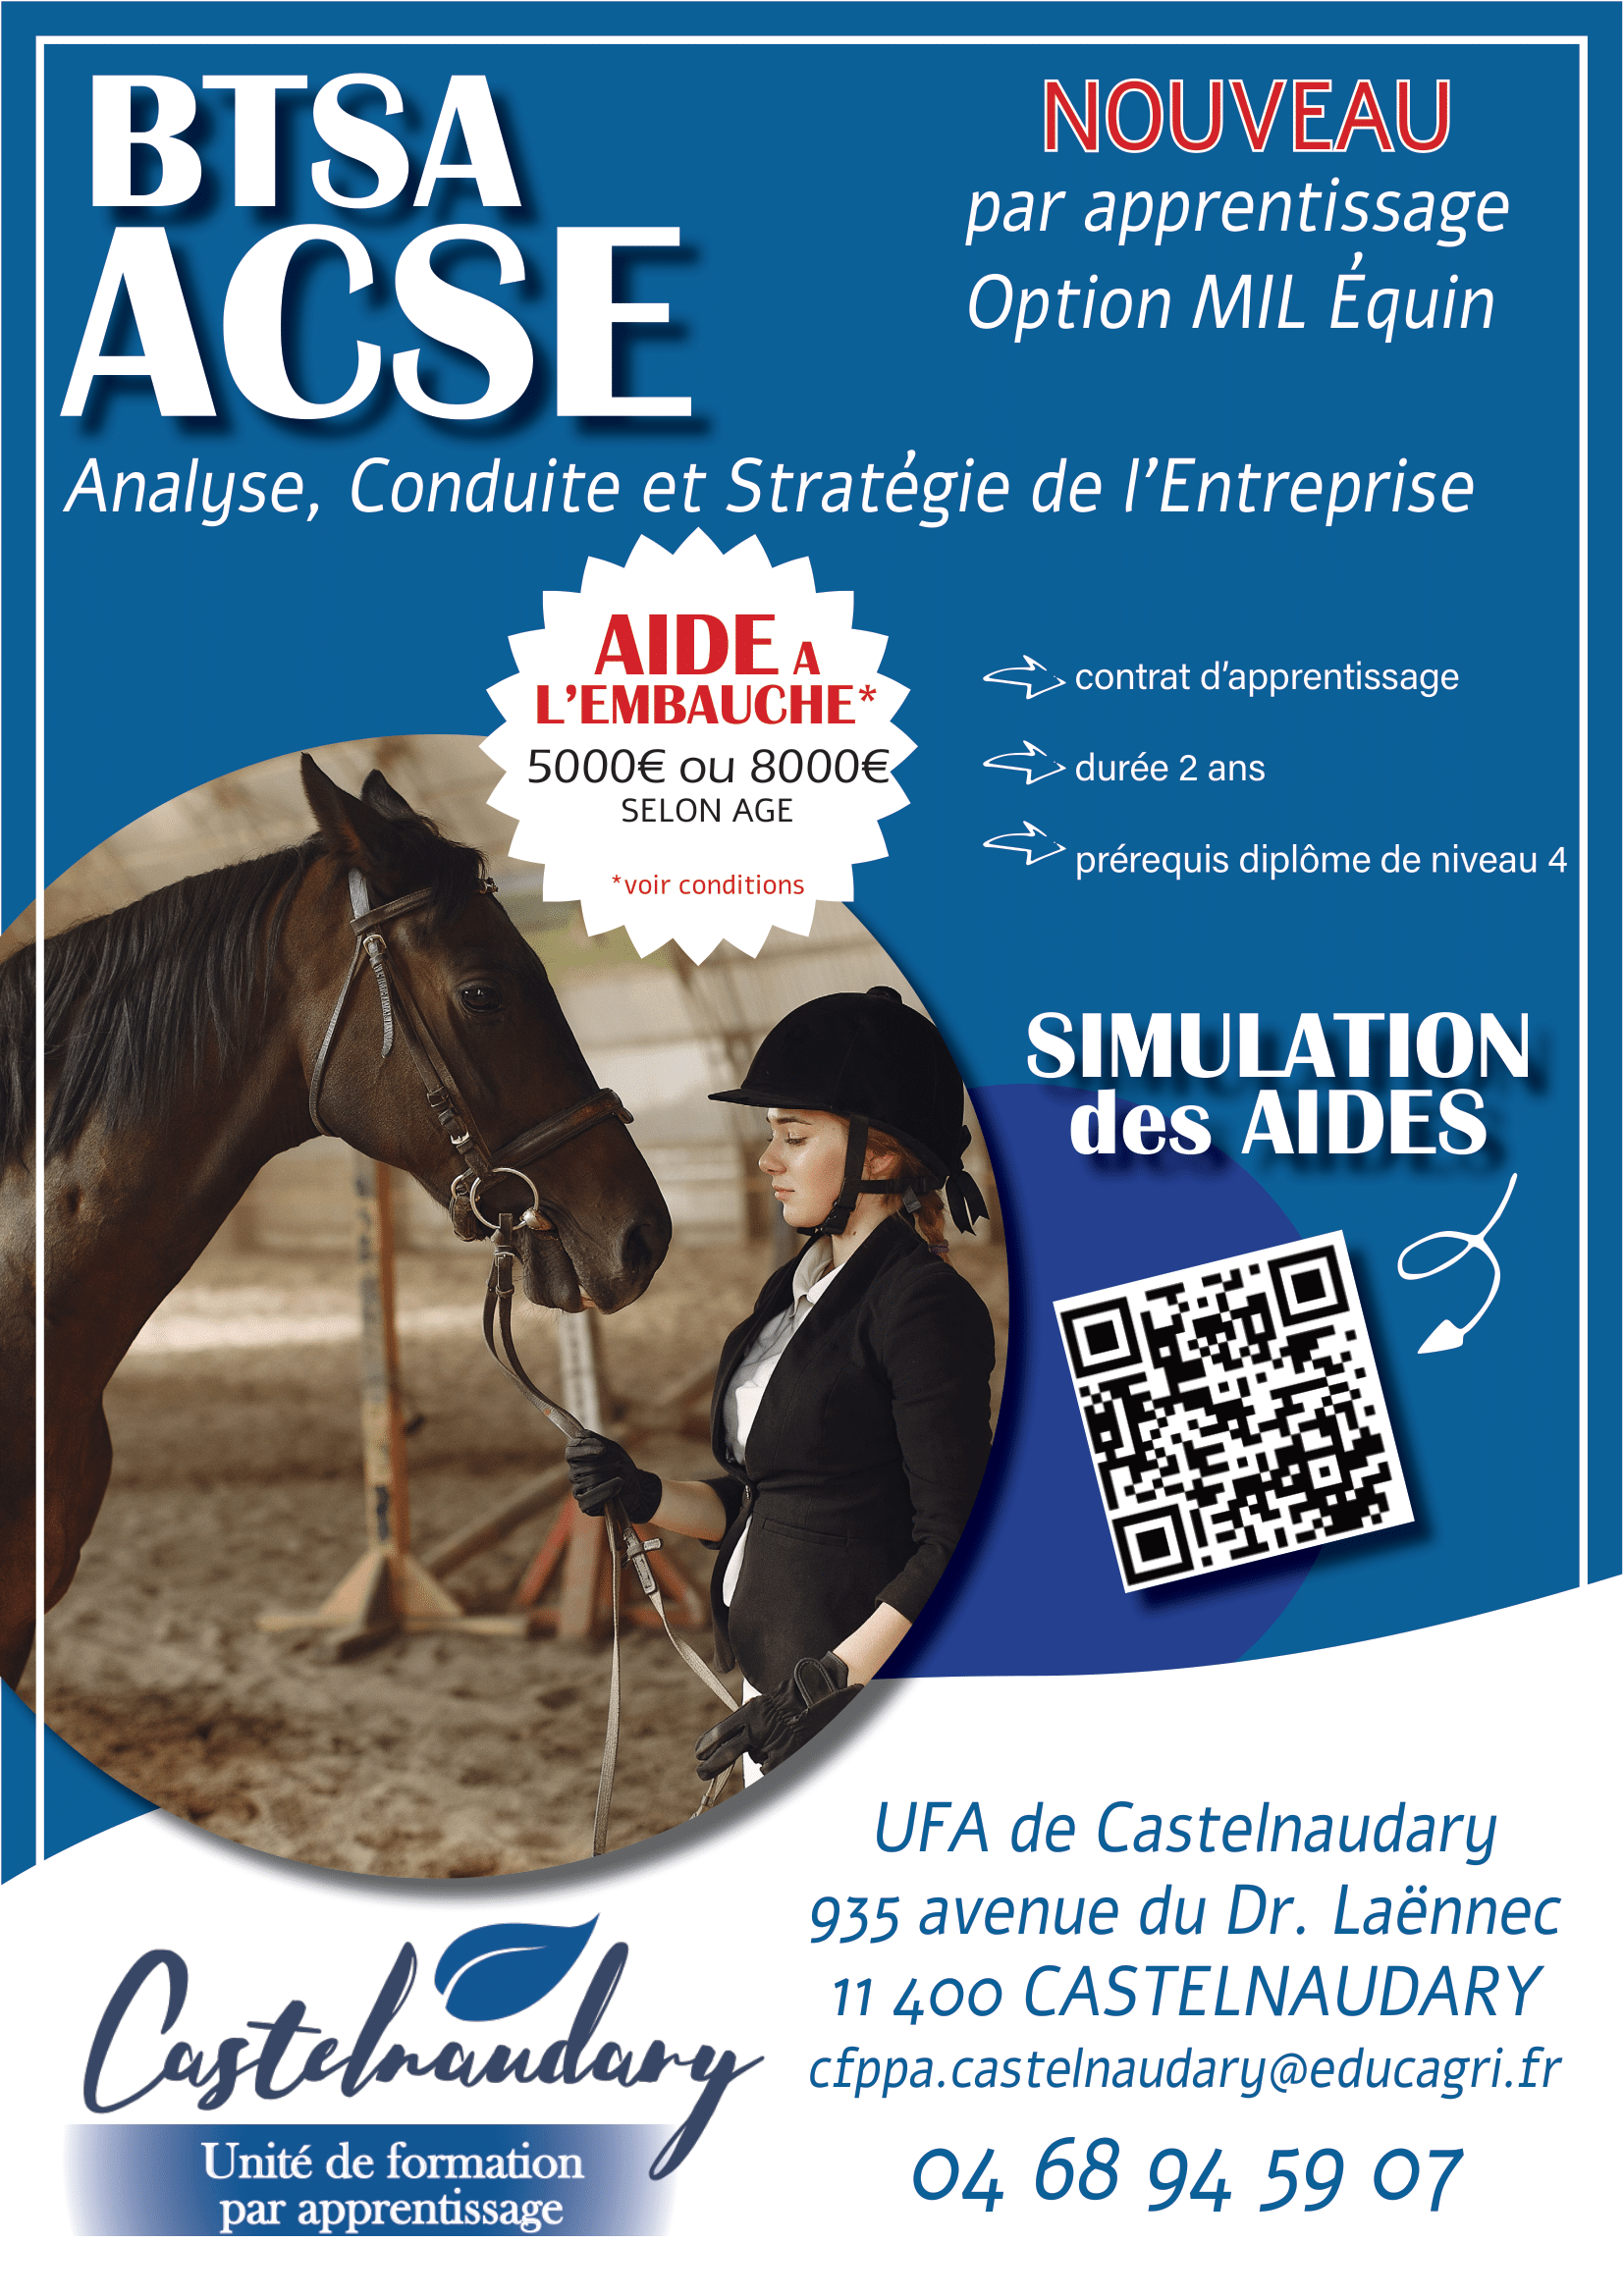 Ouverture d'un nouveau BTSA ACSE à Castelnaudary